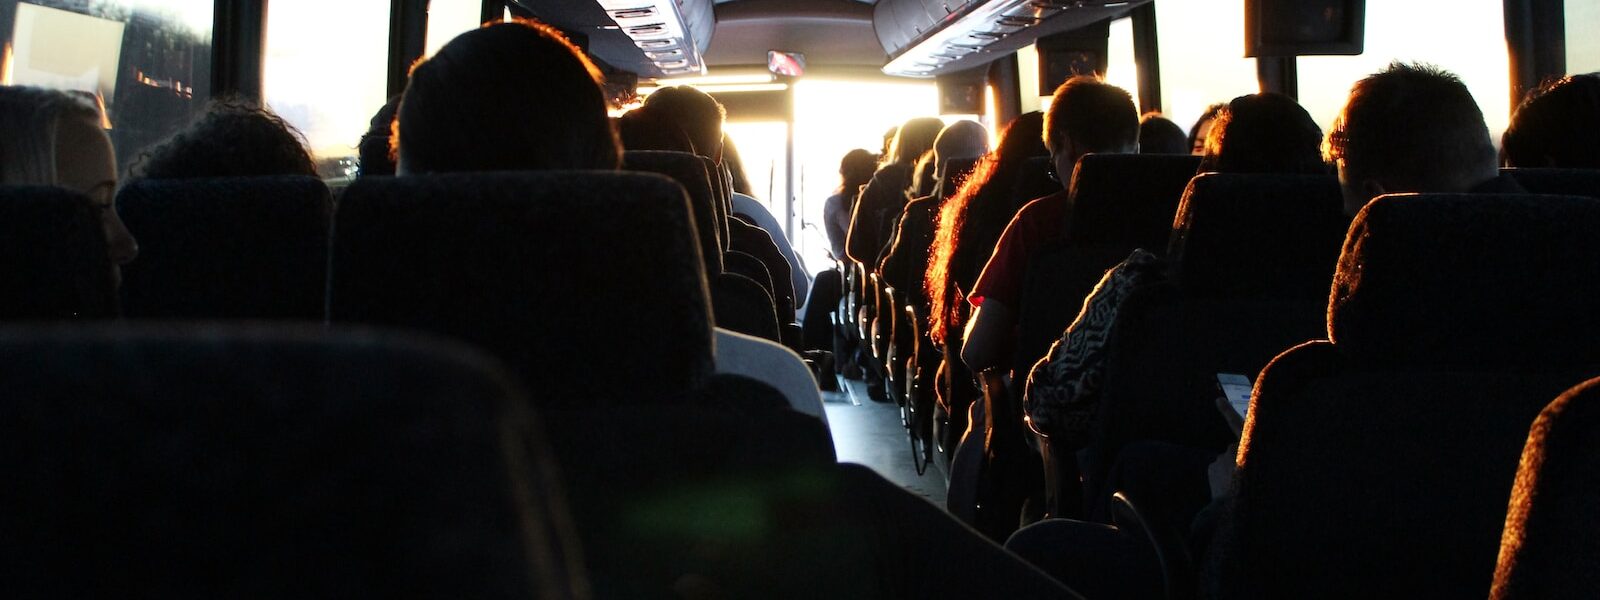 people riding passenger bus during daytime